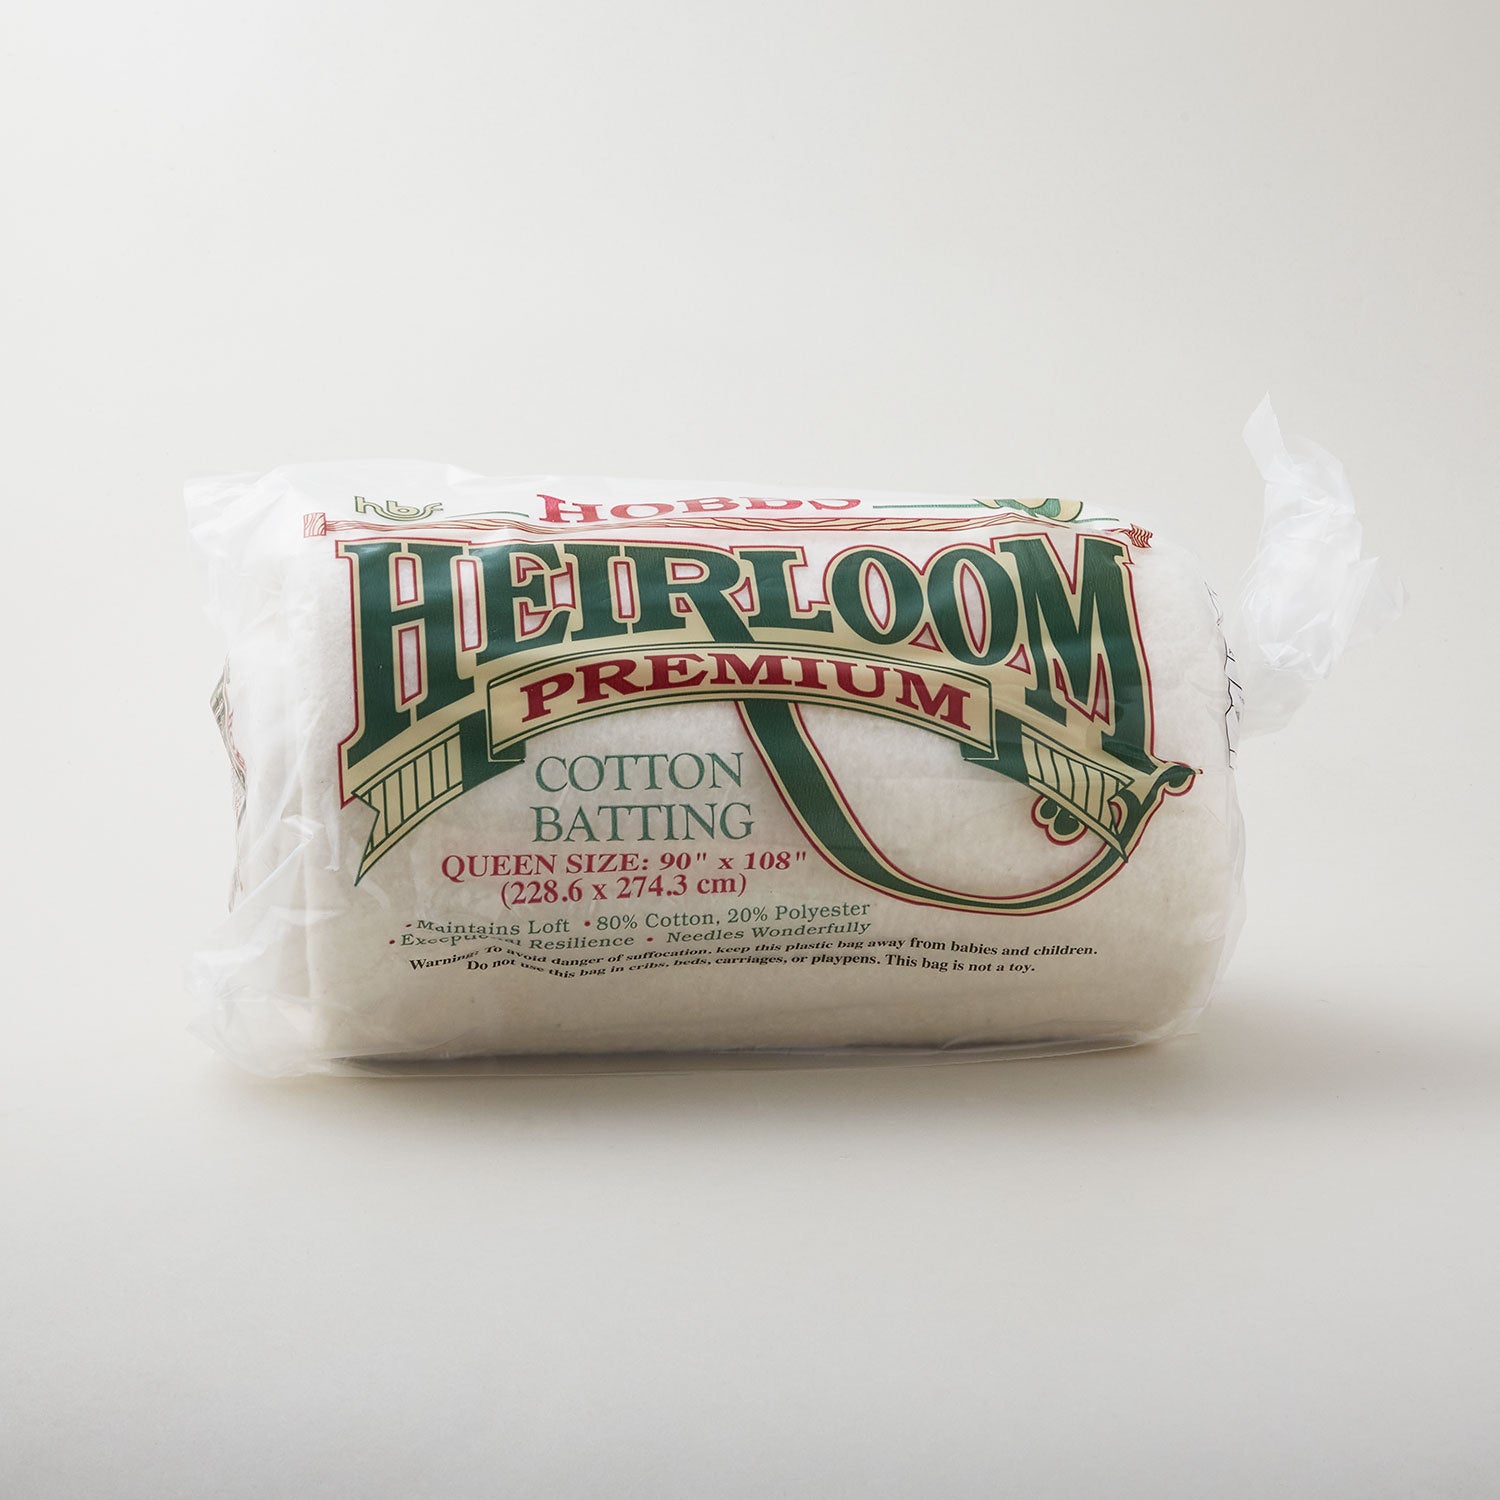 Hobbs Heirloom 80/20 Cotton Batting - Queen 90 x 108